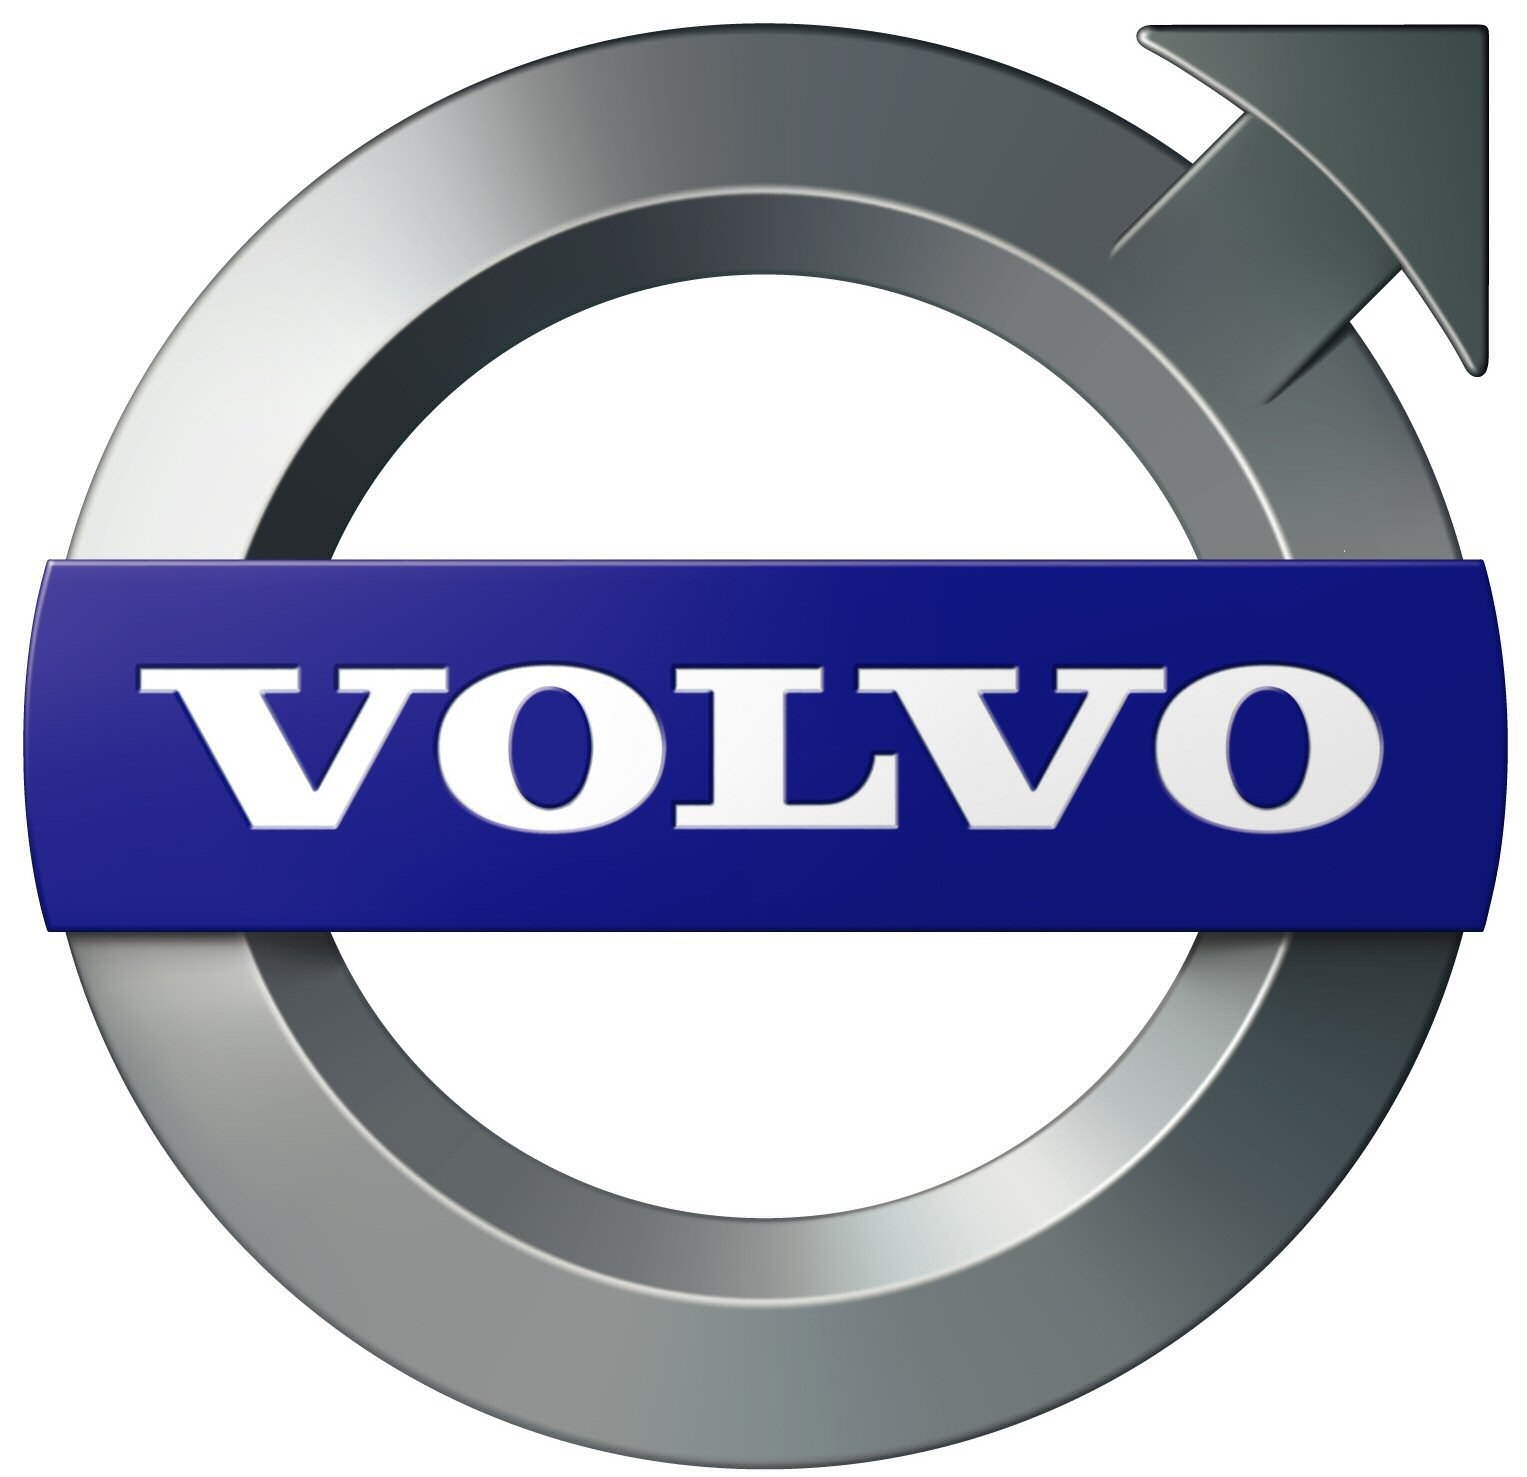 Vilva Logo photo - 1